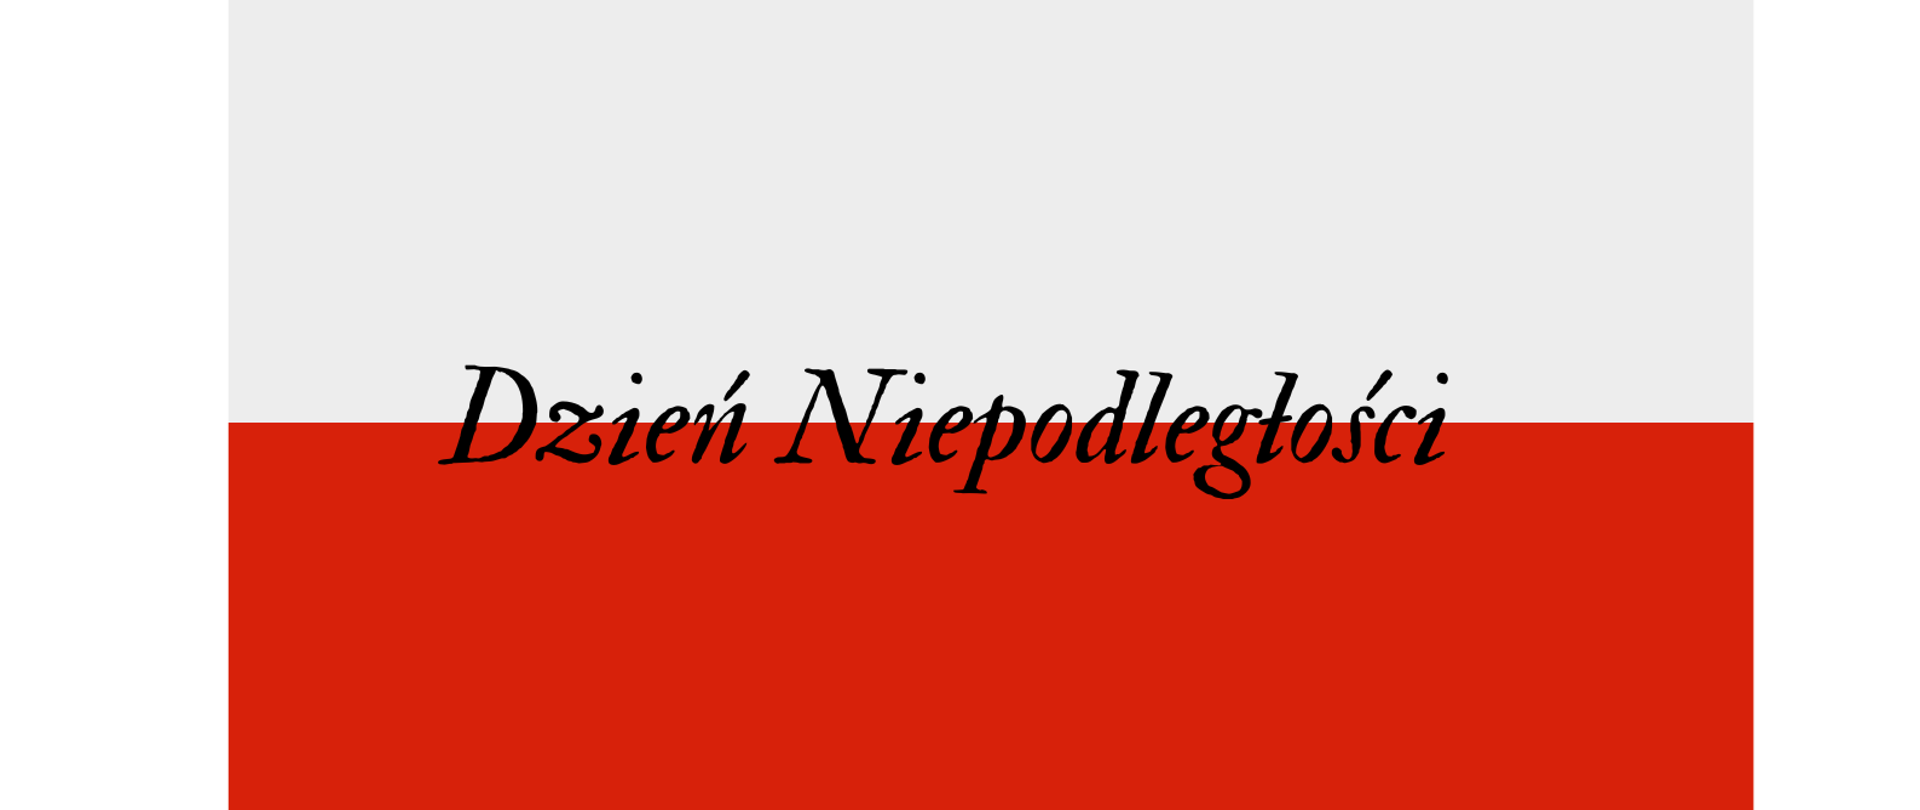 Zdjecie przedstawia flage Polski z napisem Dzień Niepodległości